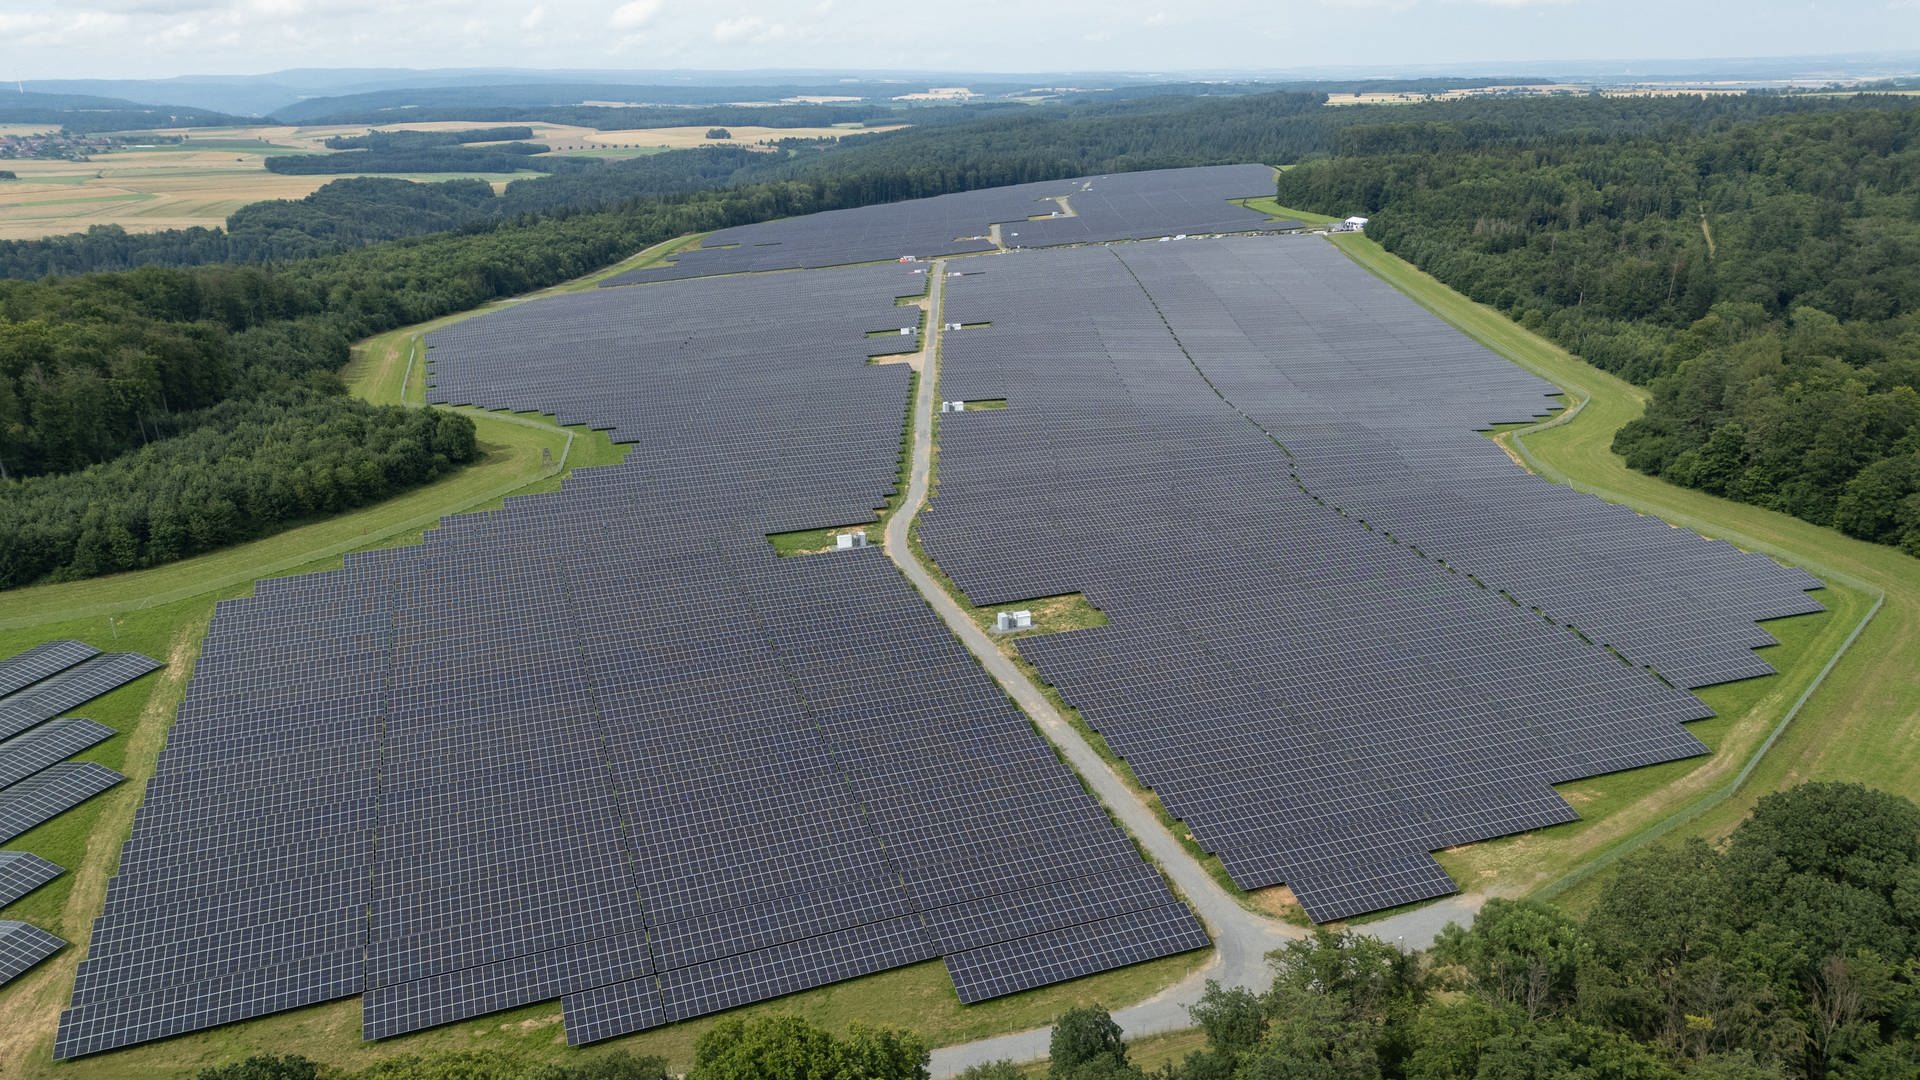 Ausbau der Solarenergie in Baden-Württemberg geht voran